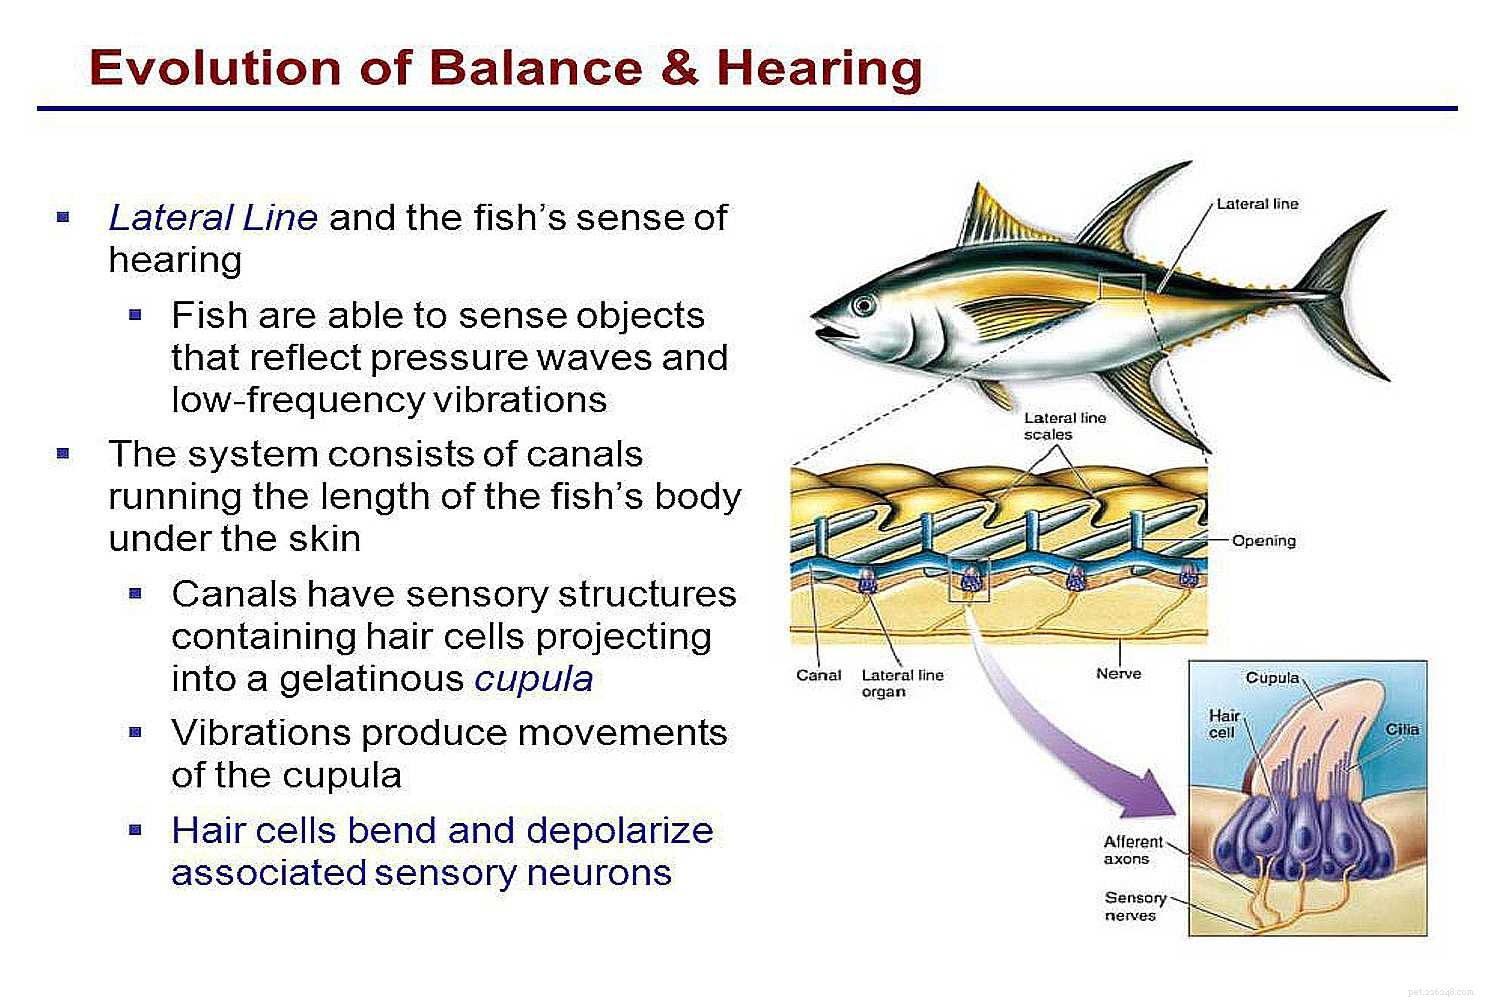 Nage, équilibre, oxygène et consommation alimentaire chez les poissons